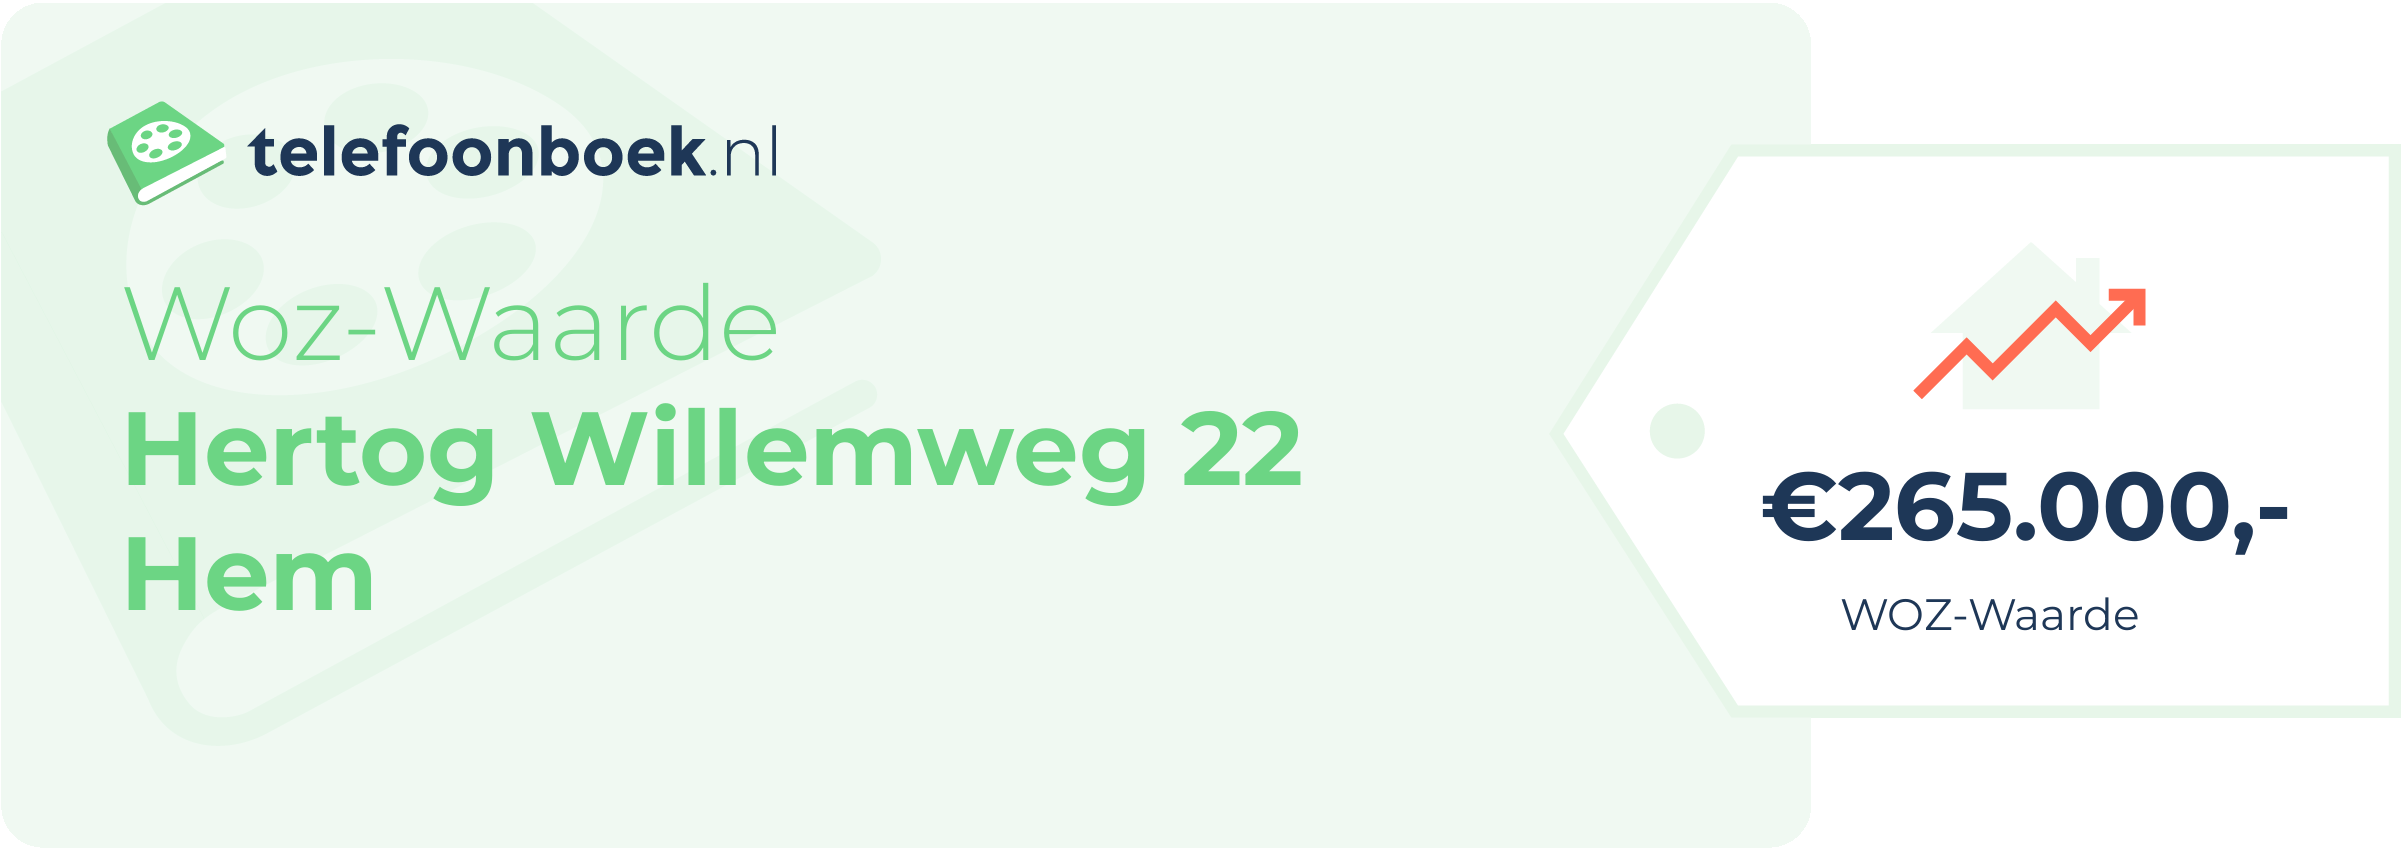 WOZ-waarde Hertog Willemweg 22 Hem